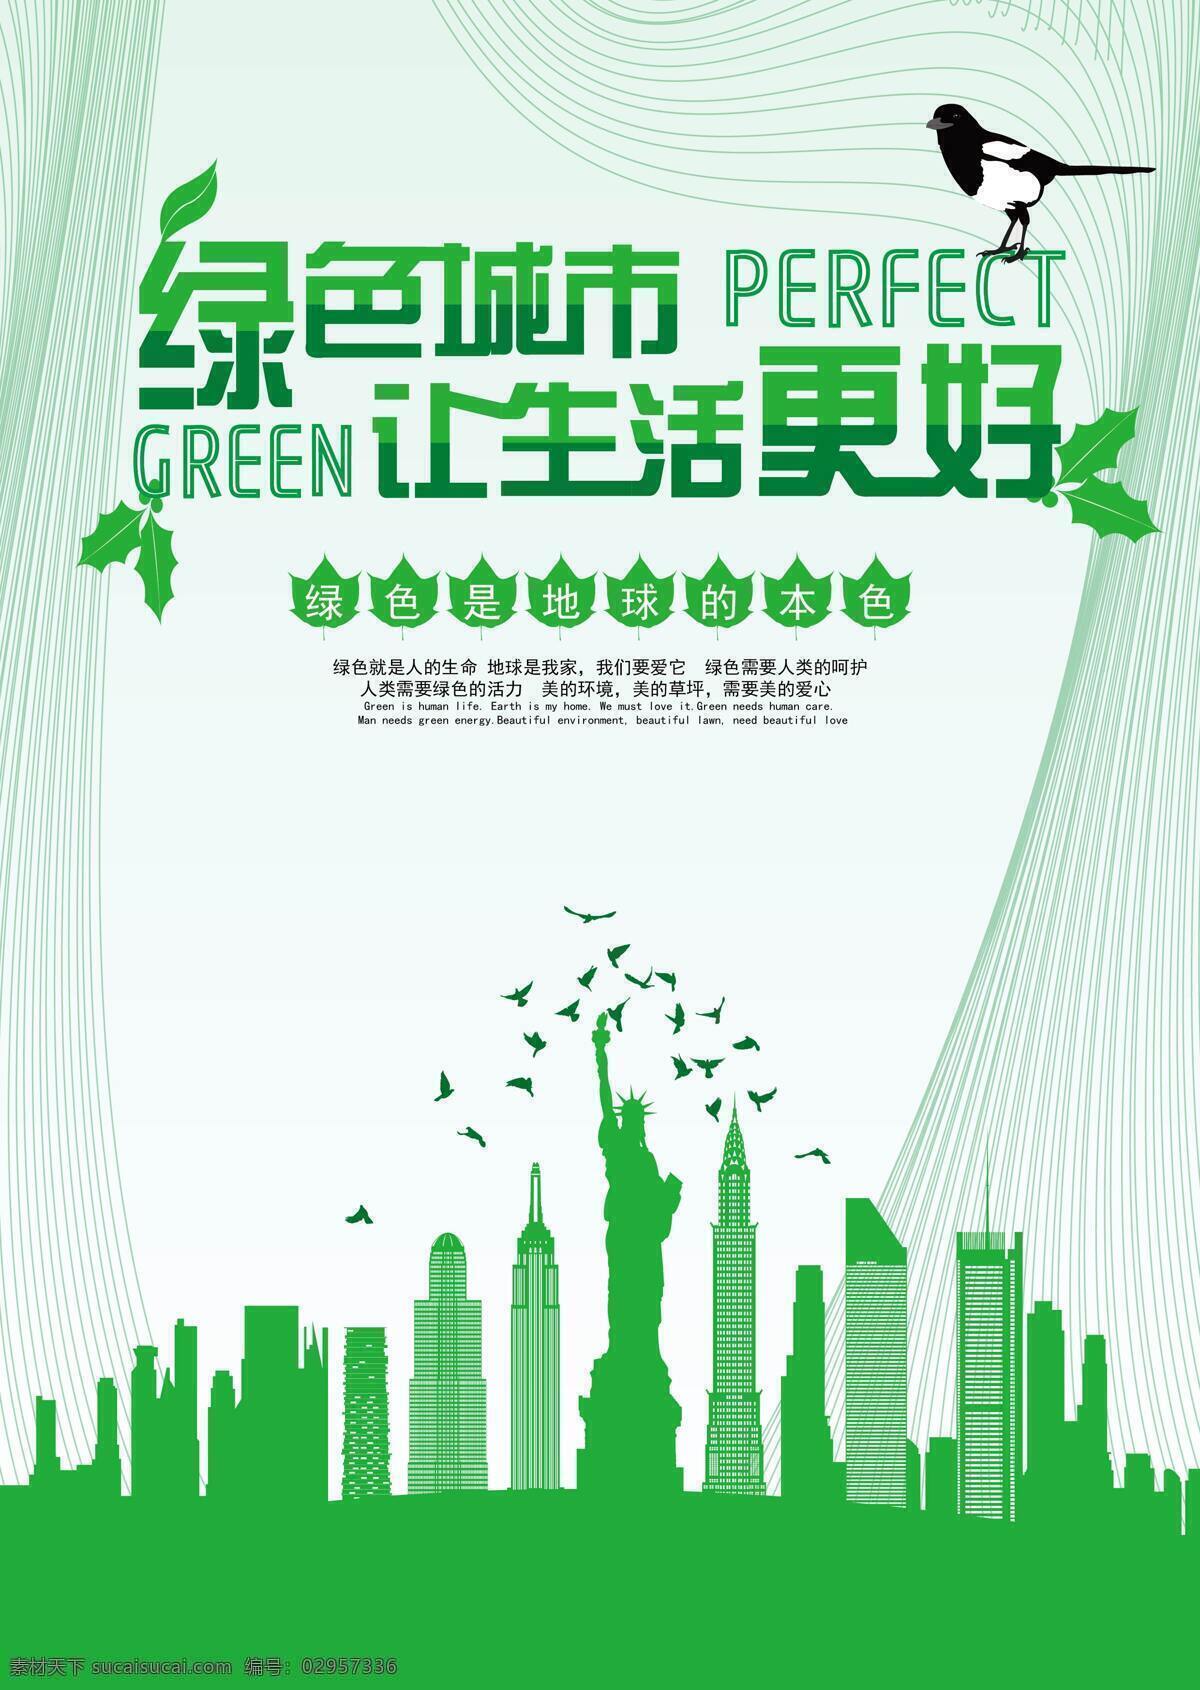 绿色 城市 生活 更 美好 树叶 鸟 喜鹊 海报 剪影 清新 简介 色系